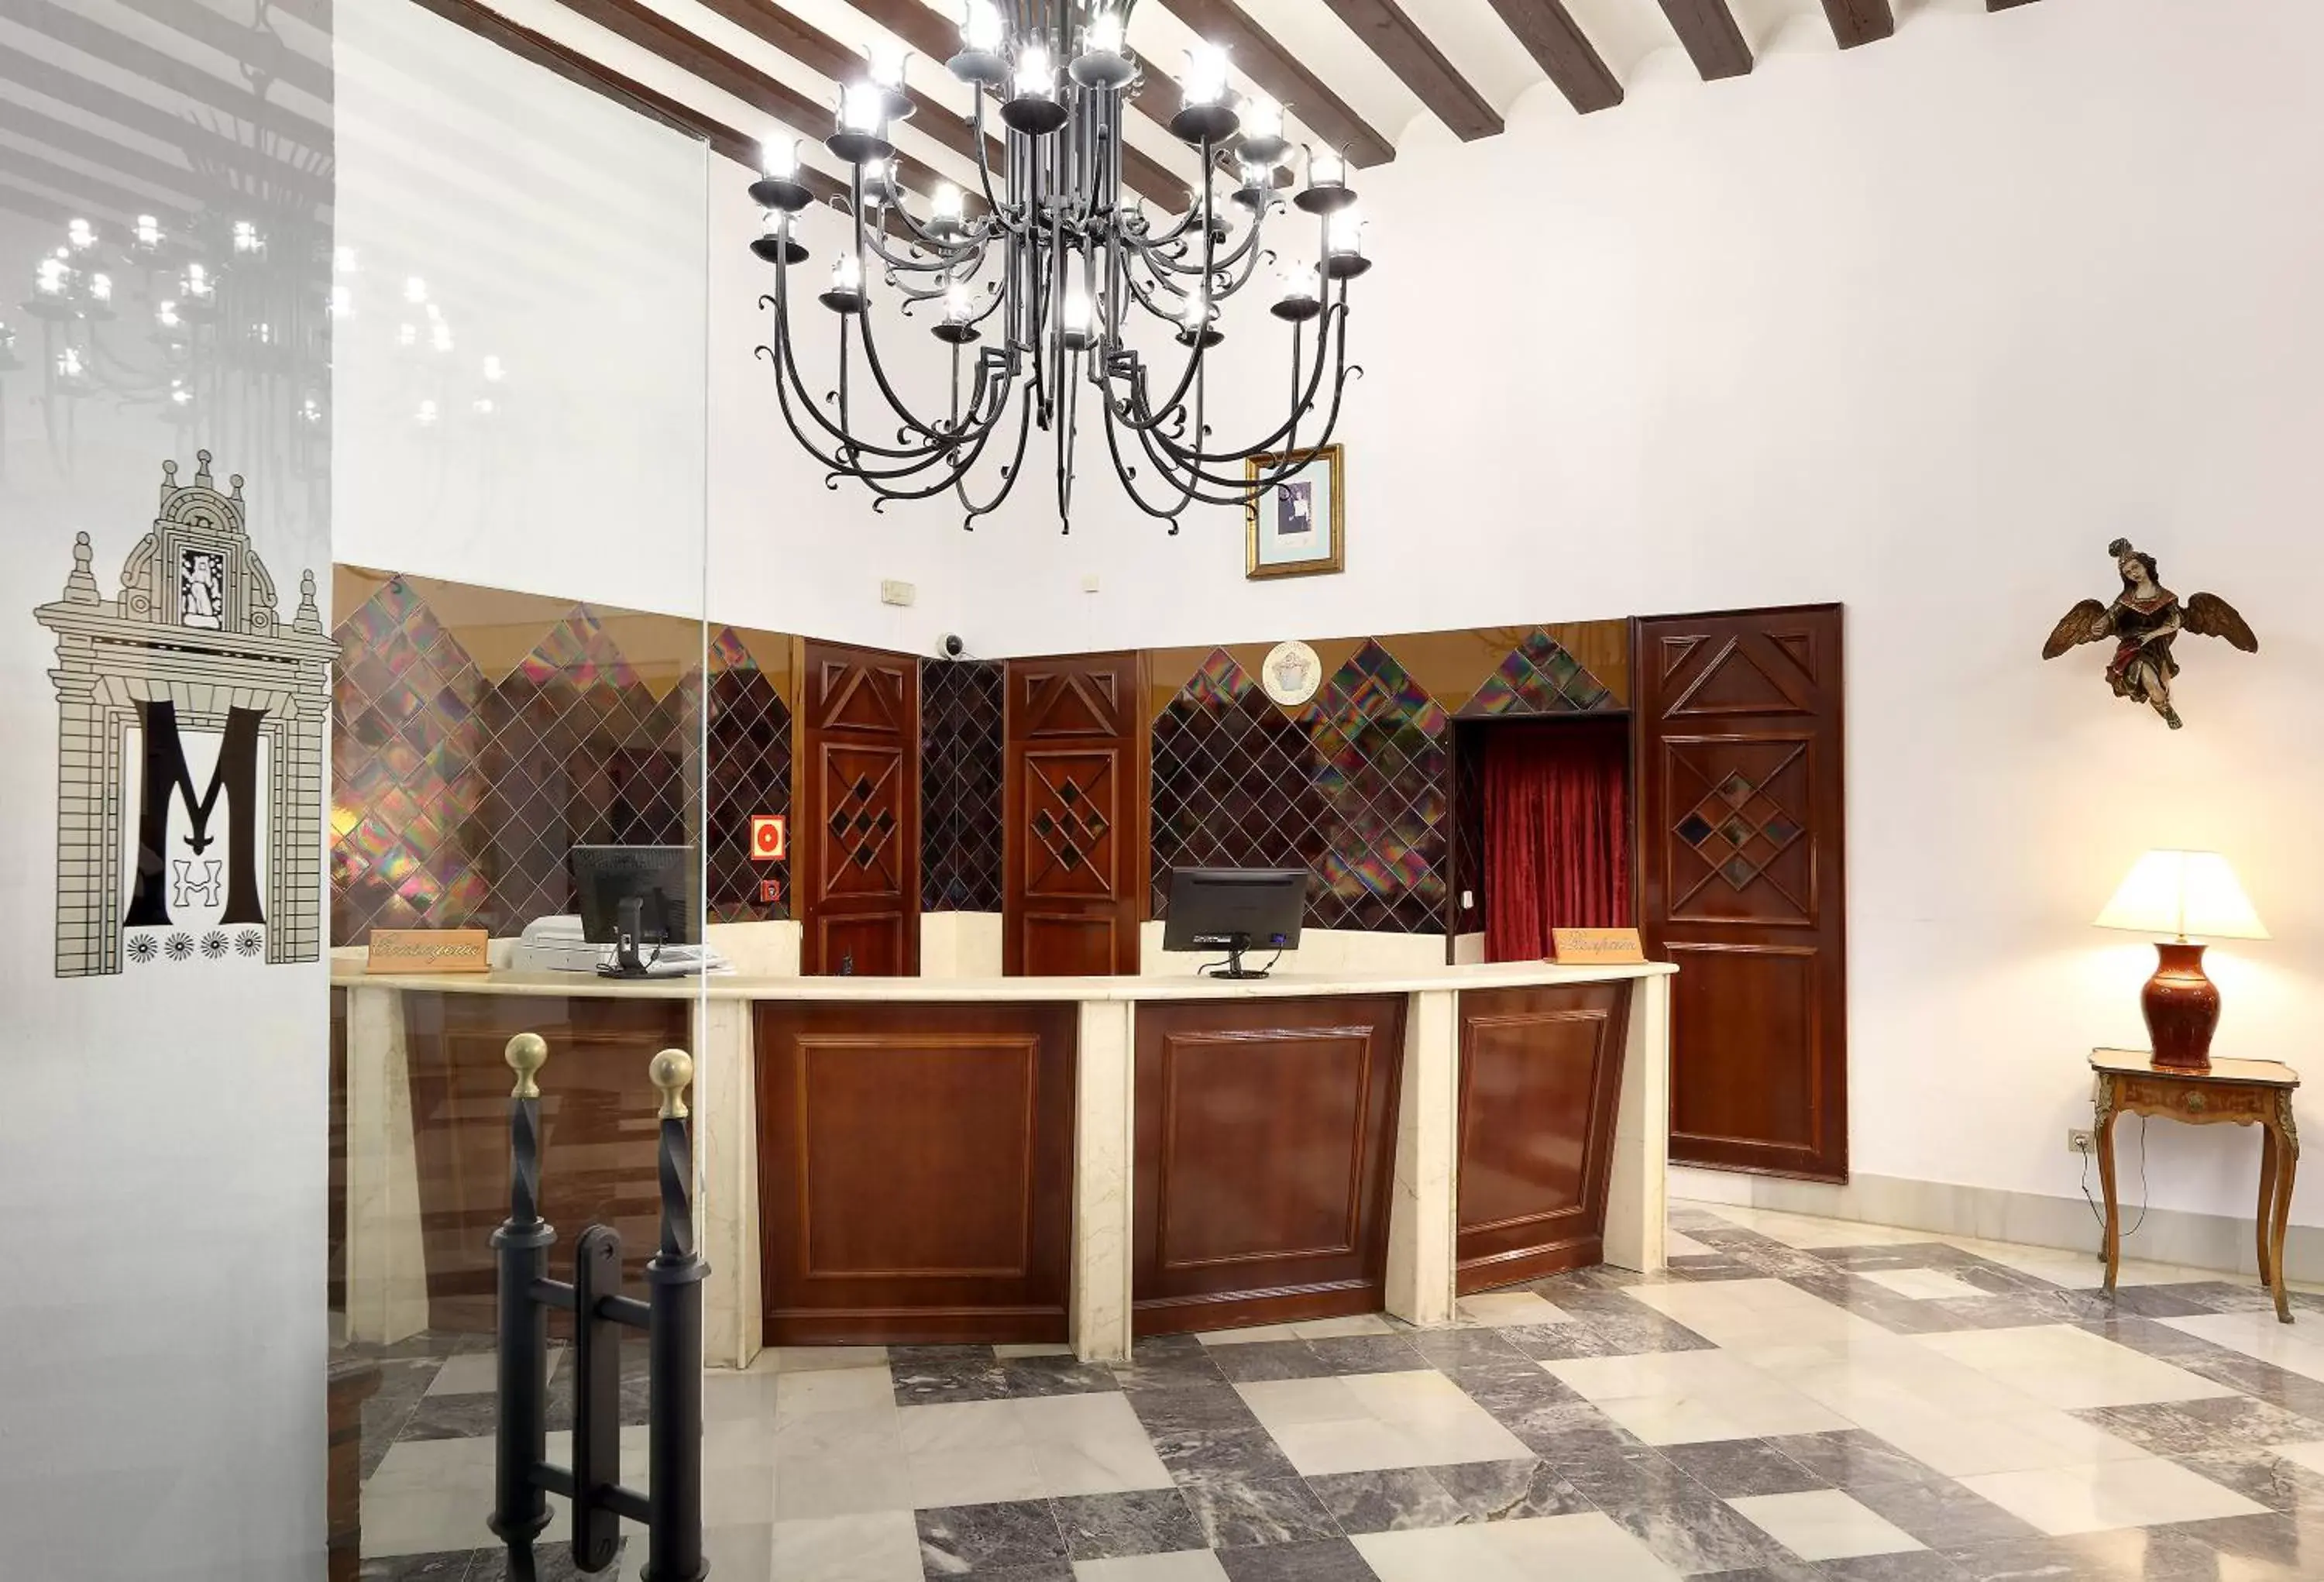 Lobby or reception, Lobby/Reception in Crisol Monasterio de San Miguel